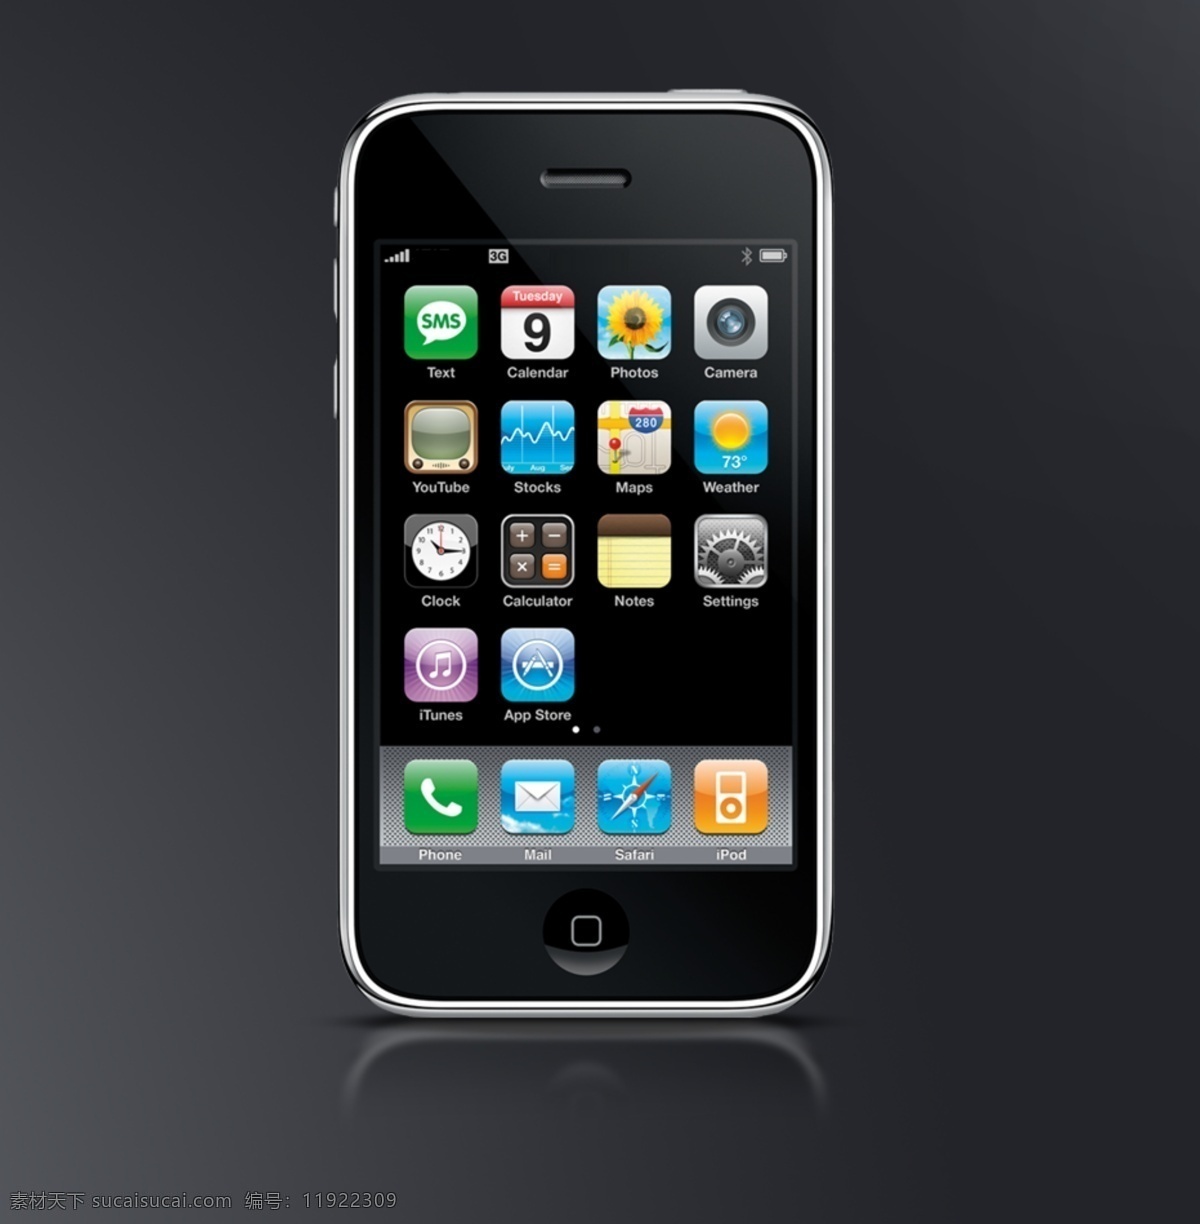 手机素材大全 iphone 苹果手机 手机素材 手机大全 psd源文件